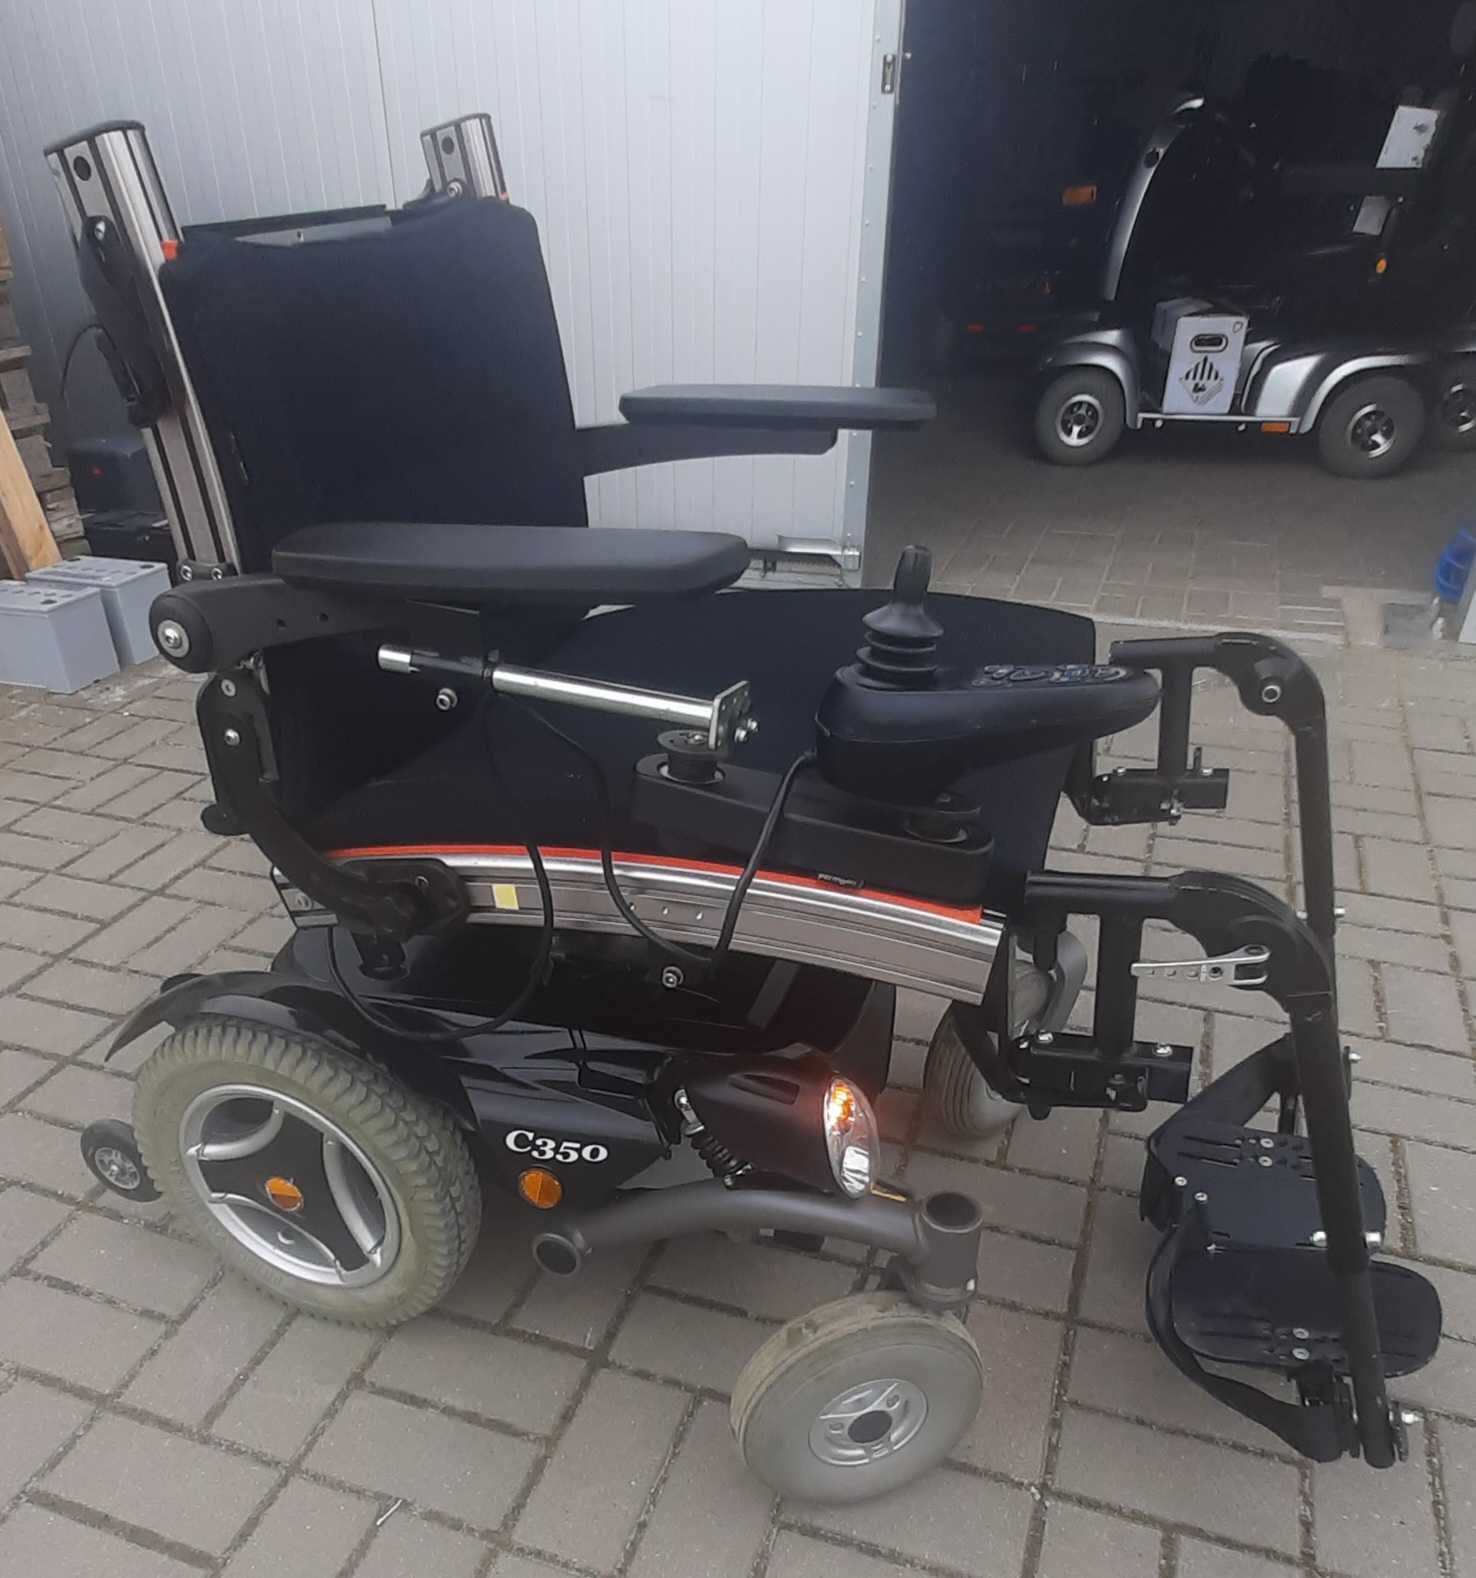 Wózek inwalidzki z napędem Permobile C350 sprawny kompletny